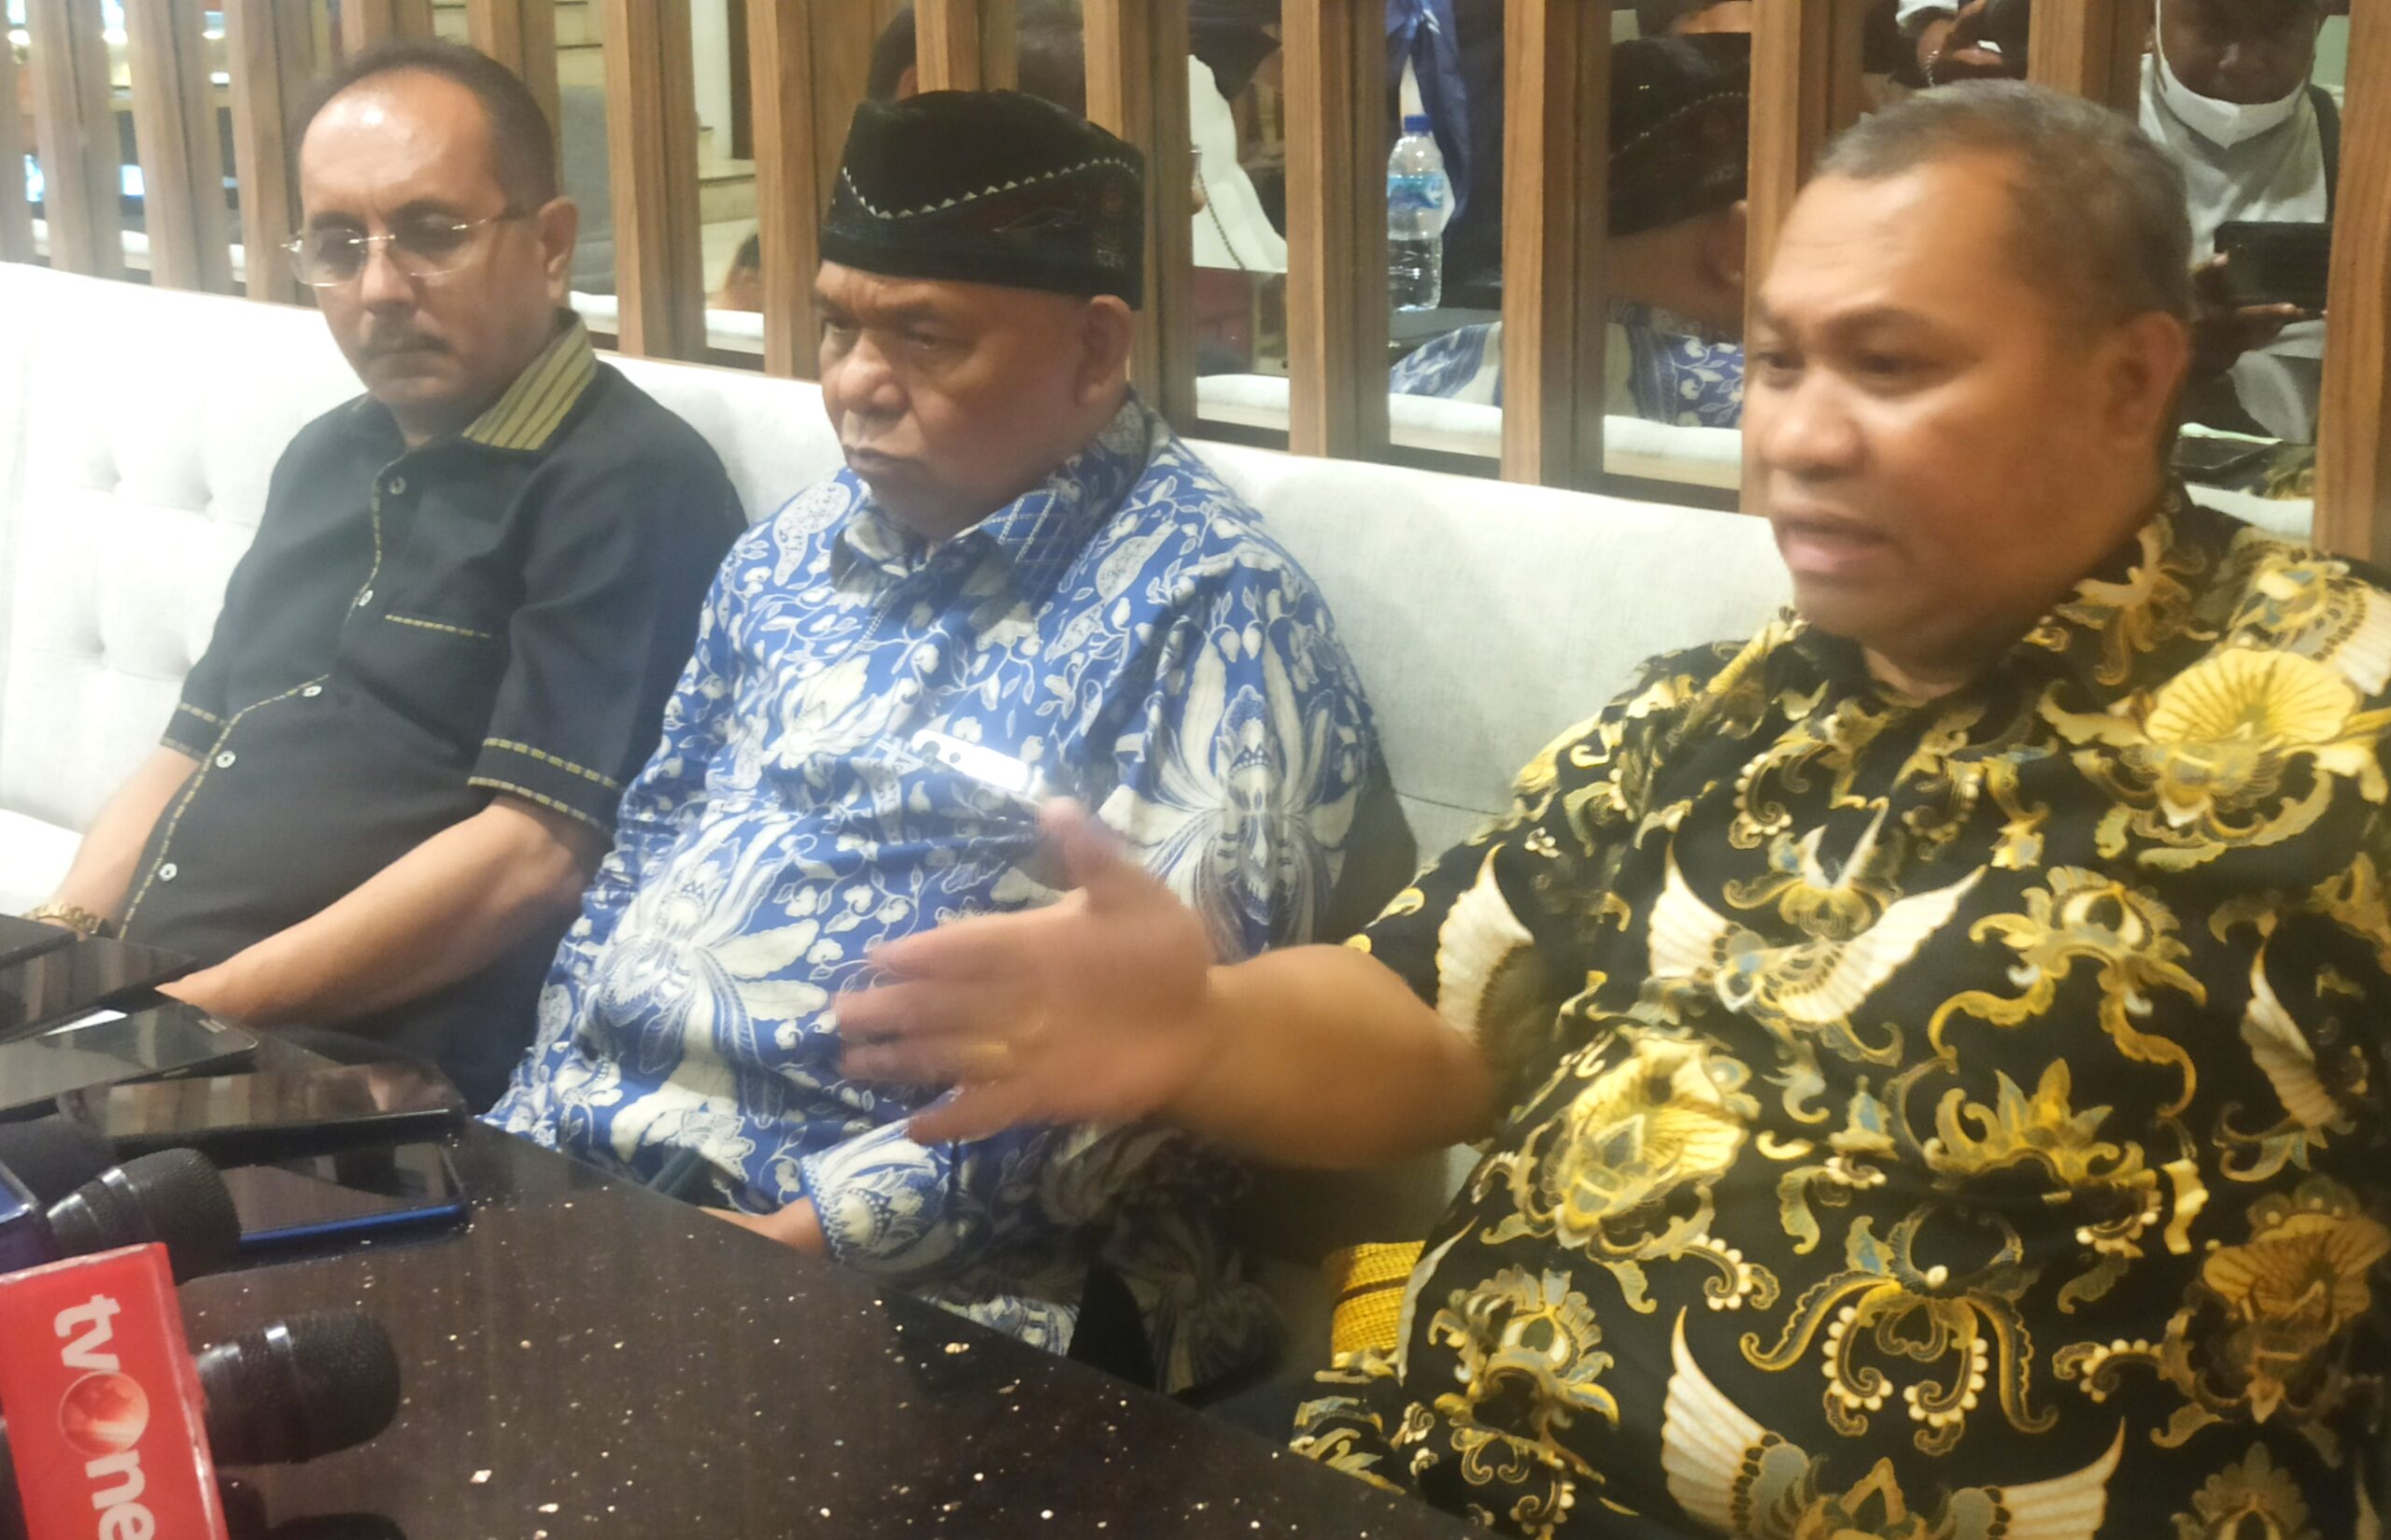 Kasus Dugaan Korupsi Gubernur Papua